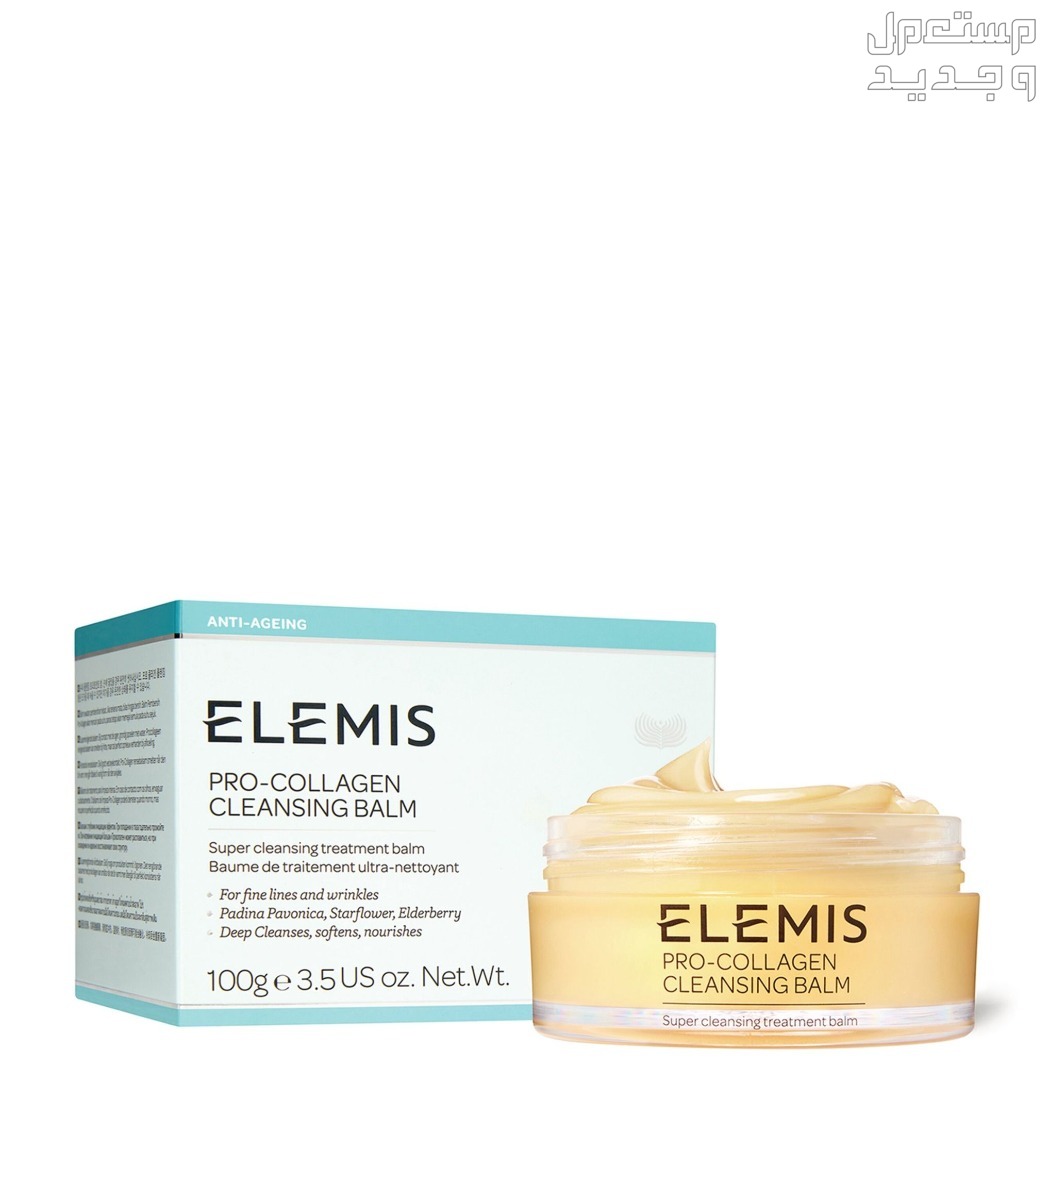 أفضل بلسم مزيل مكياج مناسب لجميع أنواع البشرة في الإمارات العربية المتحدة بلسم مزيل مكياج من ELEMIS Pro-Collagen Cleansing Balm